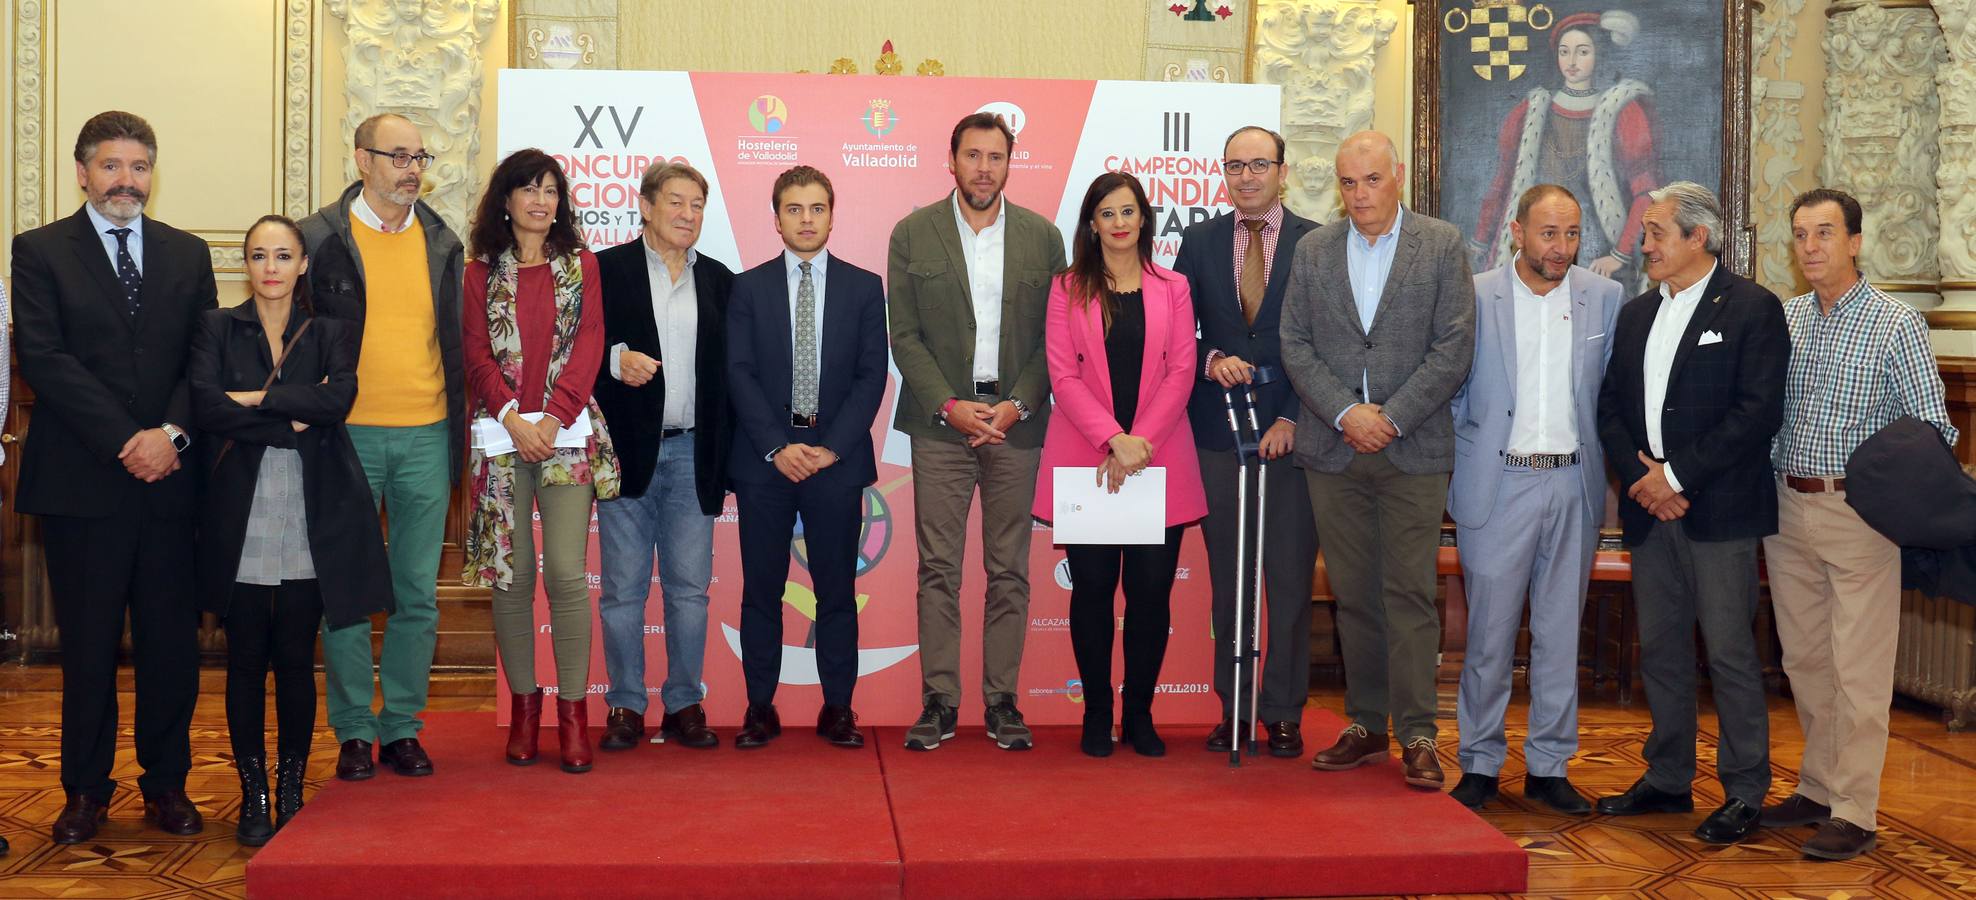 El alcalde de Valladolid, Óscar Puente, y la concejala de Cultura y Turismo, Ana Redondo, presentan el Concurso Nacional de Pinchos.